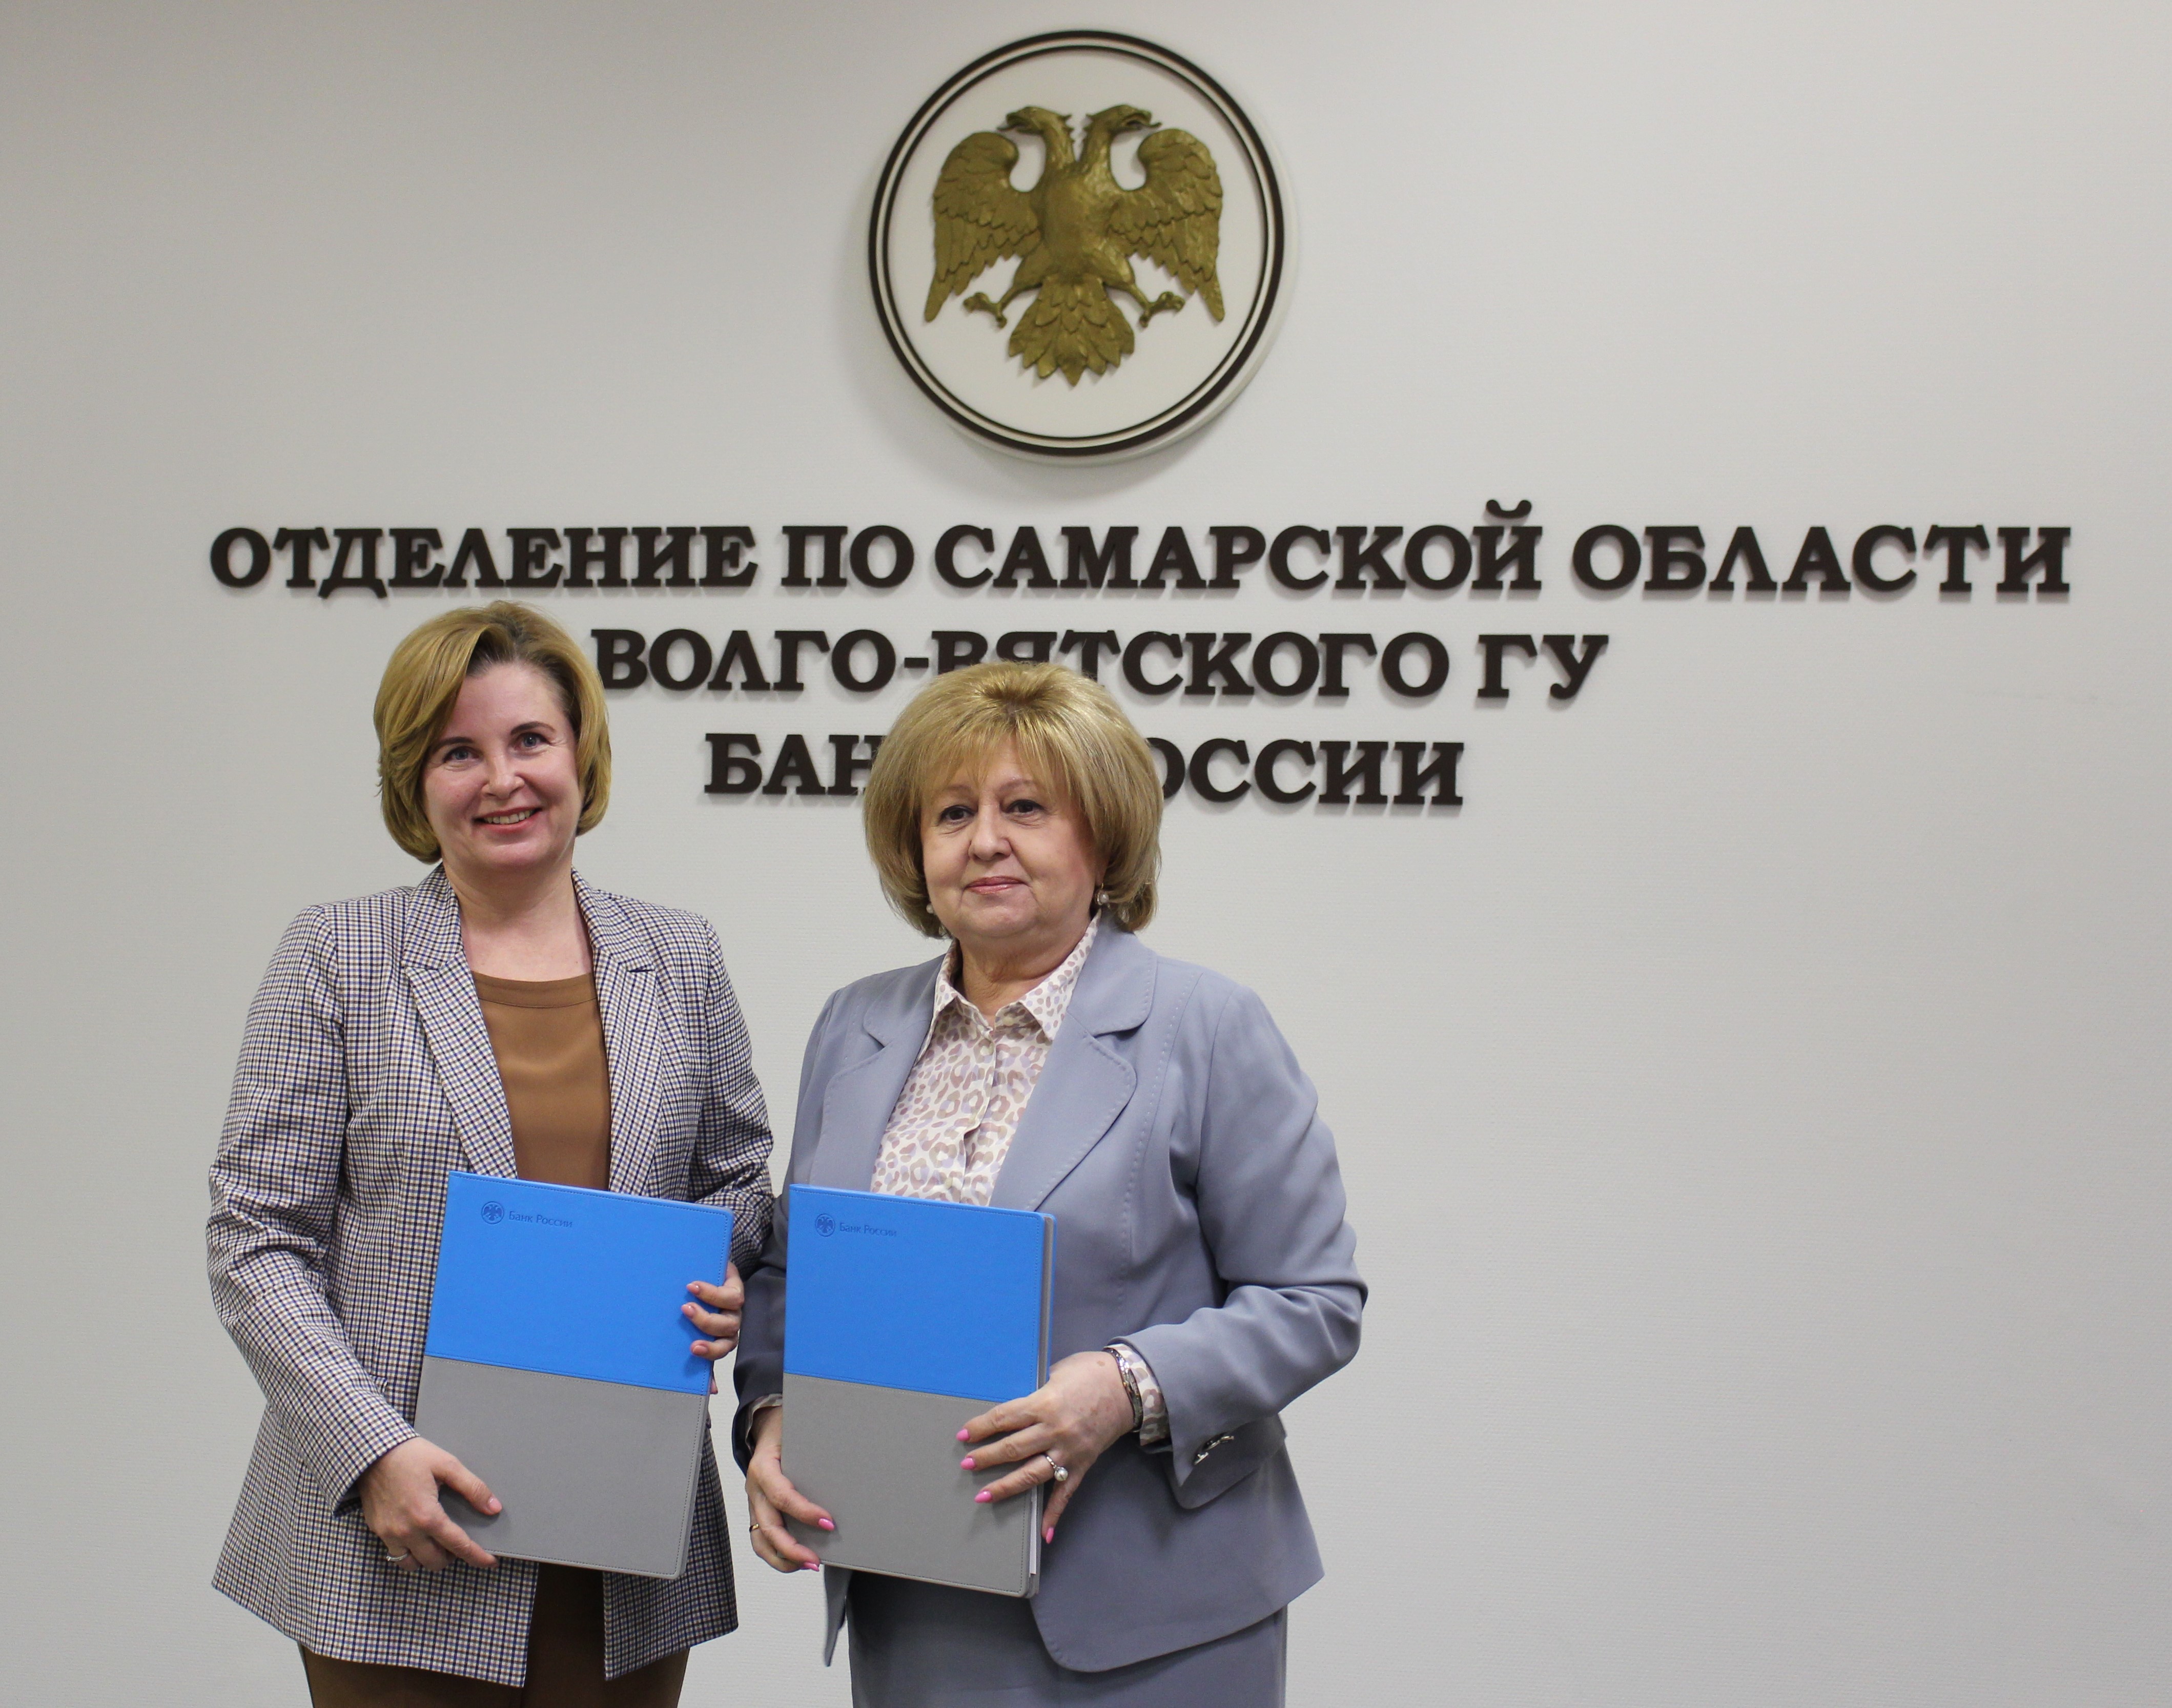 Подписано соглашение о сотрудничестве между Уполномоченным по правам человека в Самарской области и Отделением Самара Волго-Вятского ГУ Центрального банка РФ